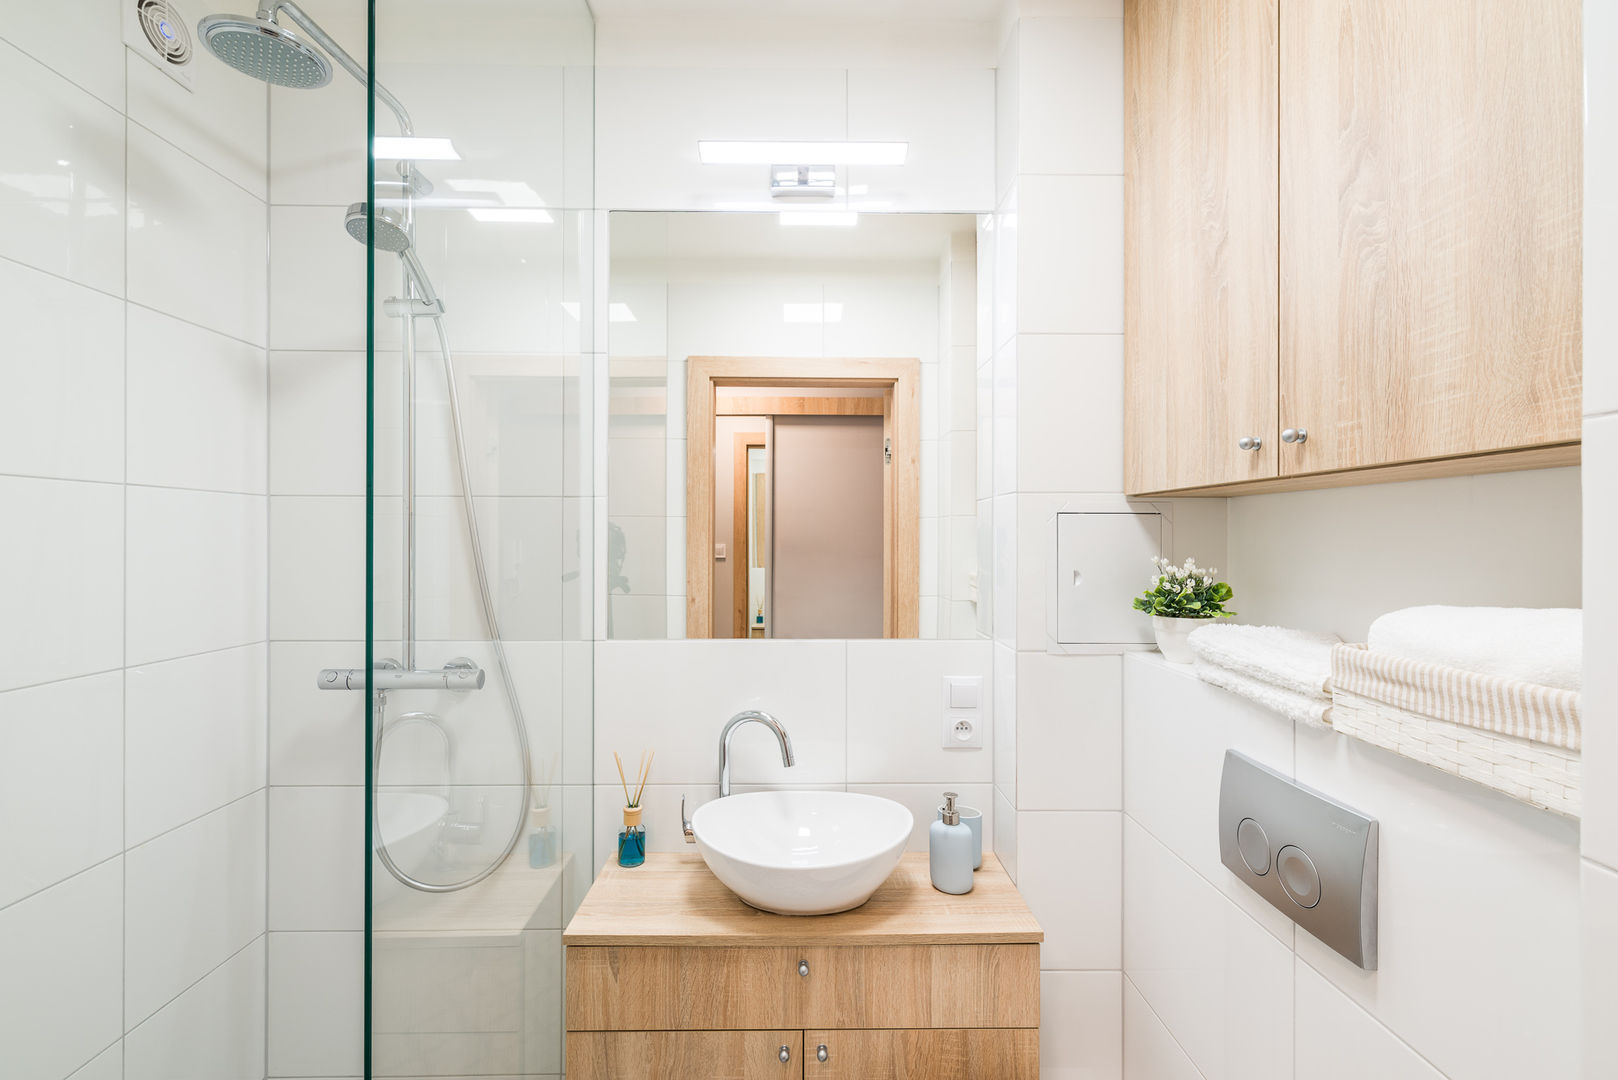 wrocławskie mieszkanie, jw architektura jw architektura Scandinavian style bathroom